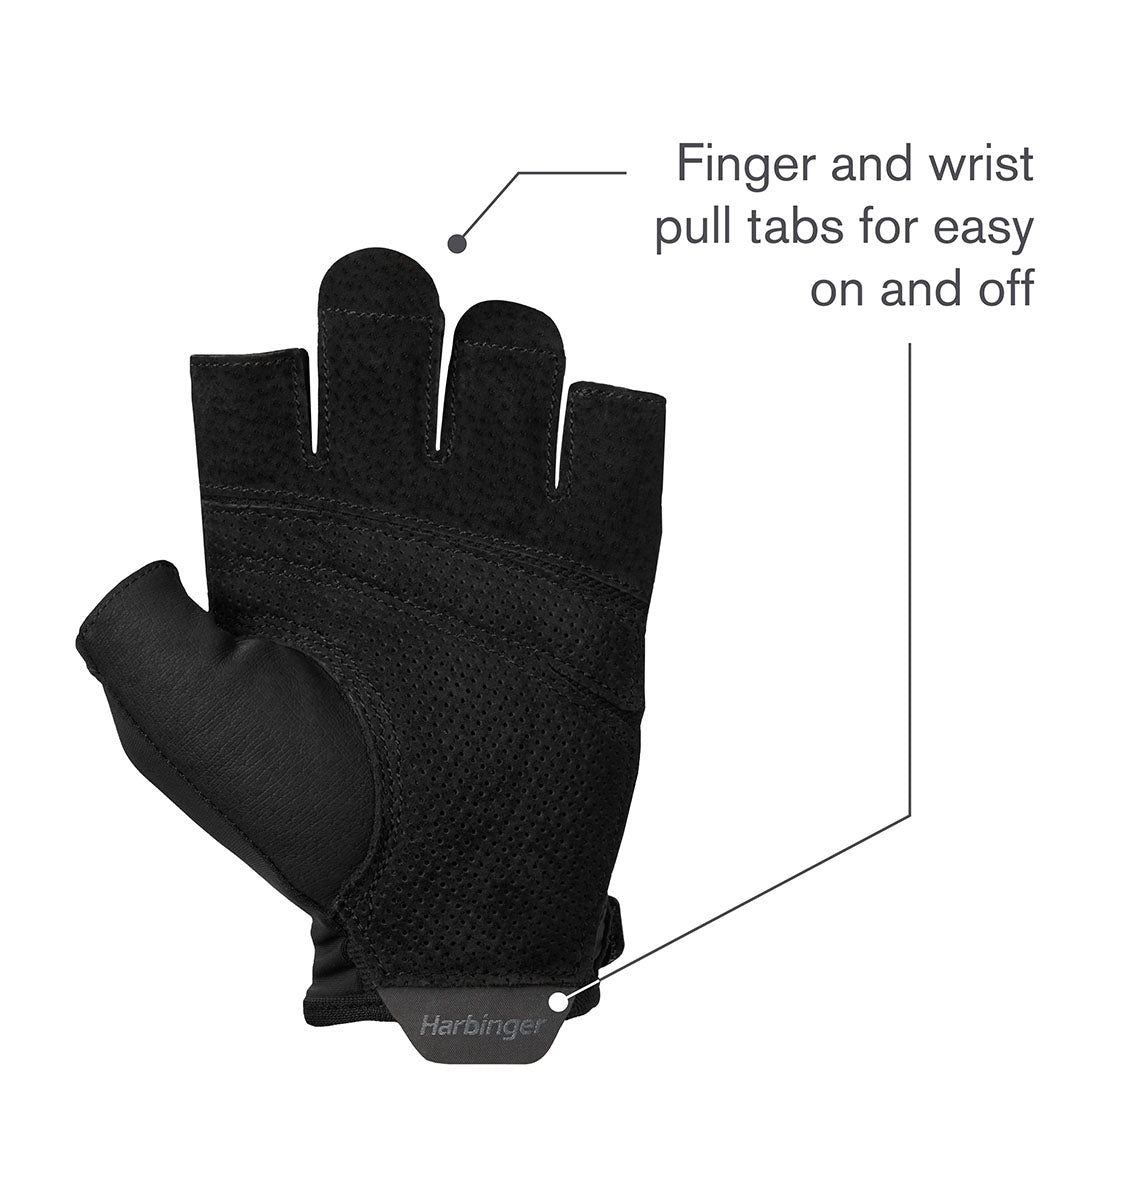 Harbinger Pro Gloves 2.0 - Unisex - Black - 9